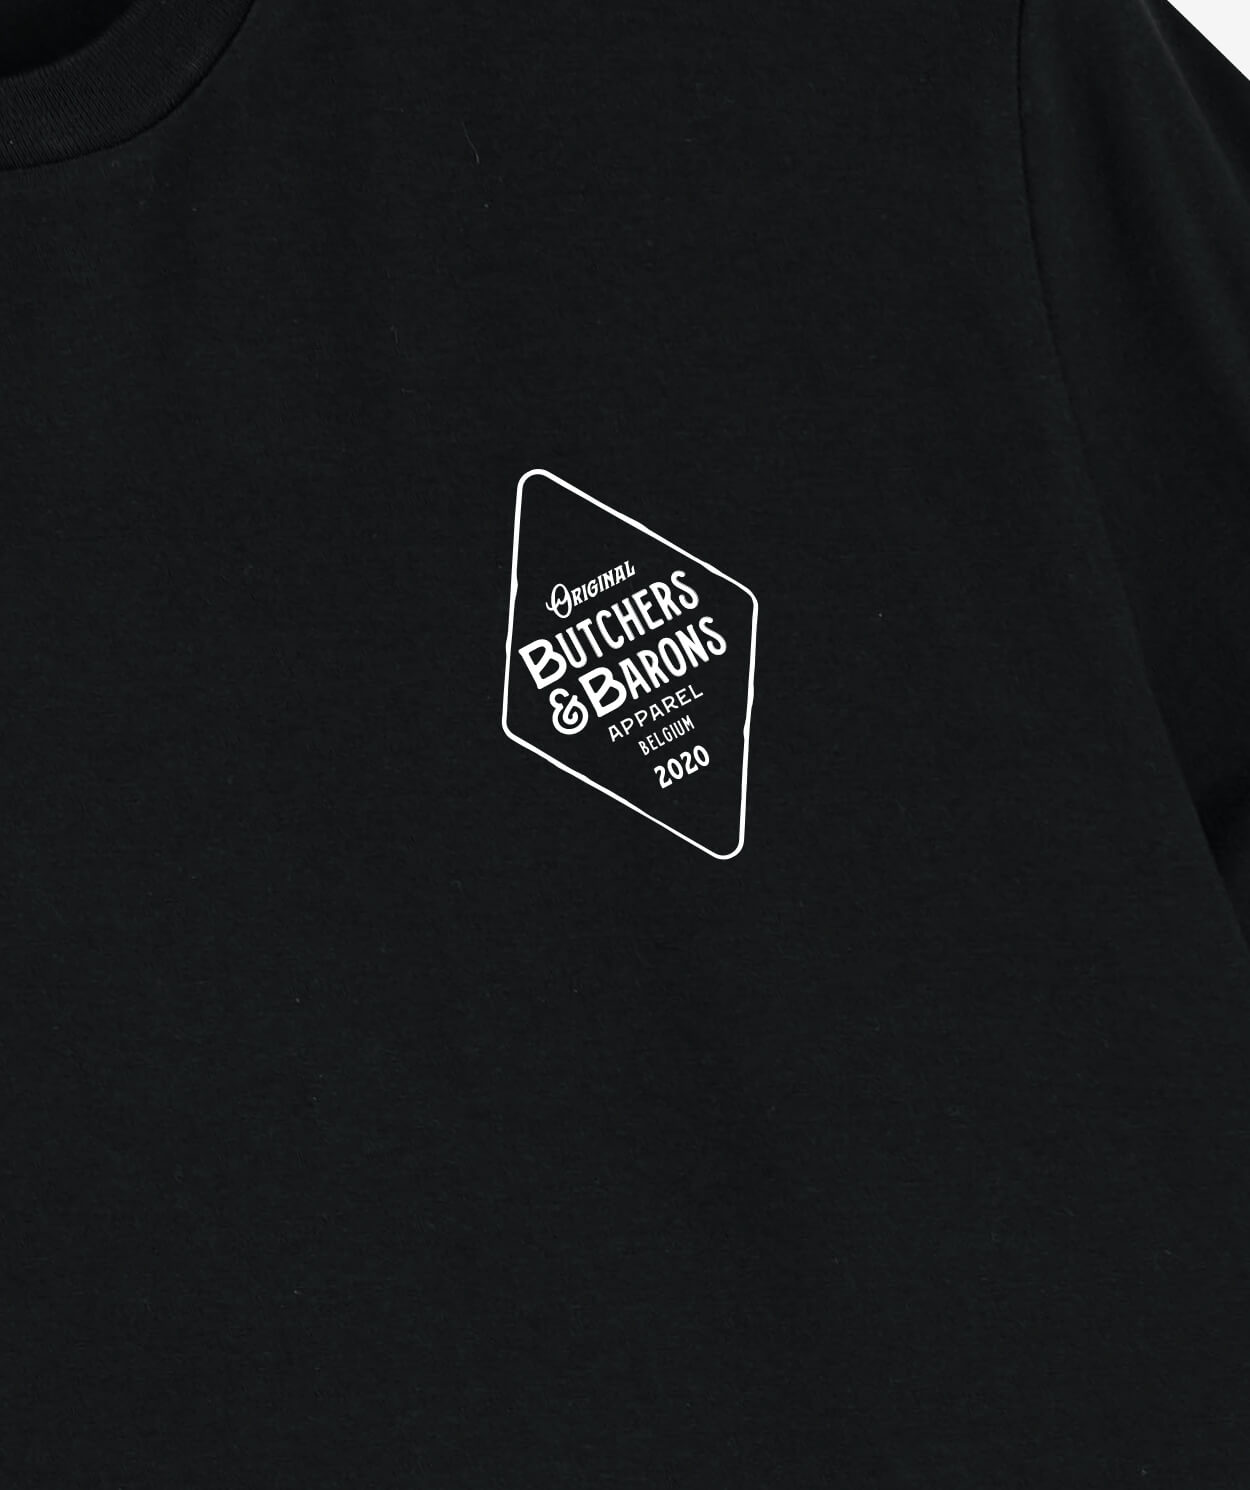 Original black t-shirt by Butchers & Barons